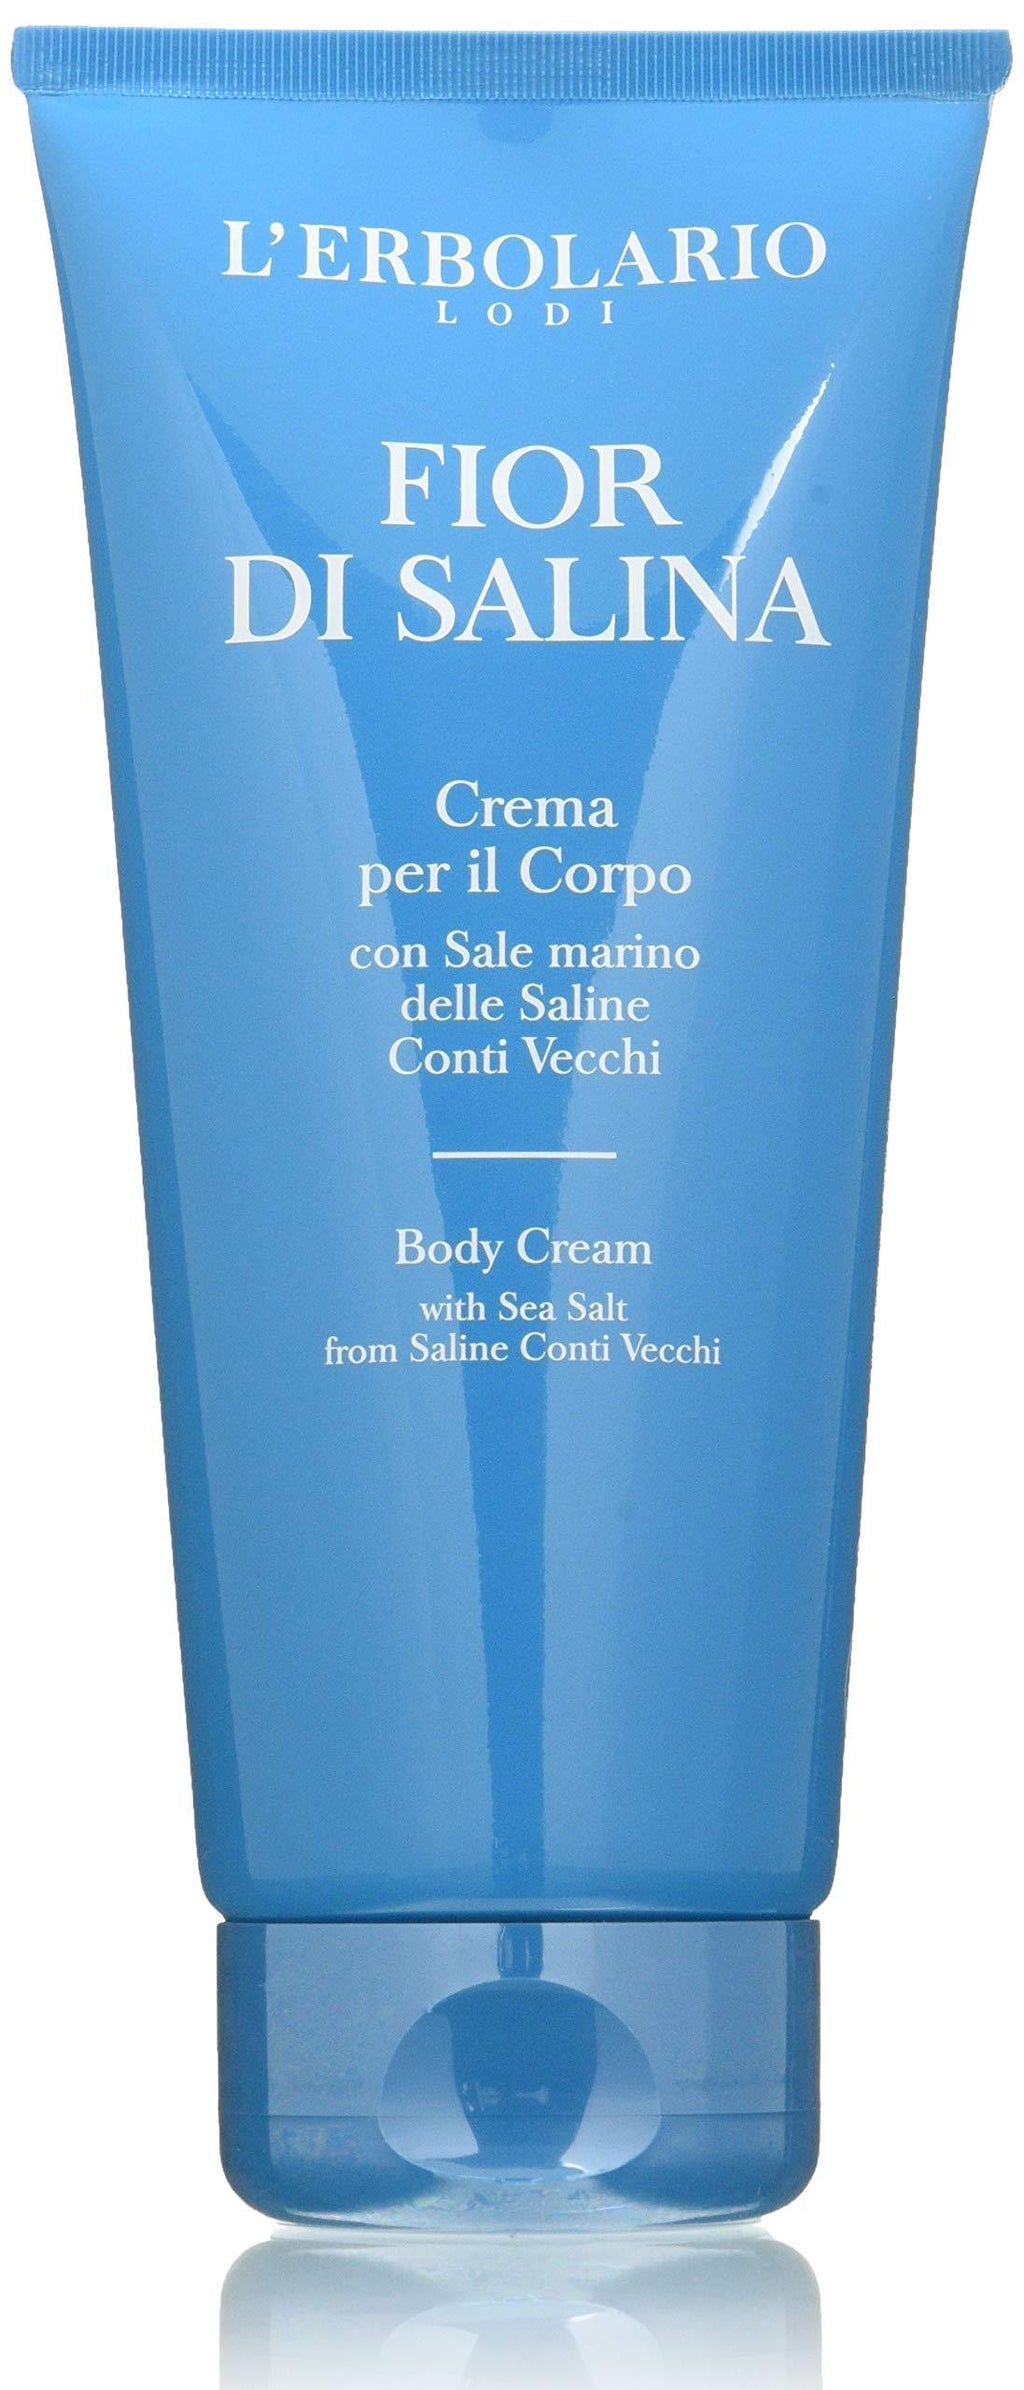 L'Erbolario Fior Di Salina Body Cream wih Citrus Scent -Makes Skin Silky and Smooth Made with Sea Salt from Saline Conti Vecchi, 6.7 Oz - BeesActive Australia